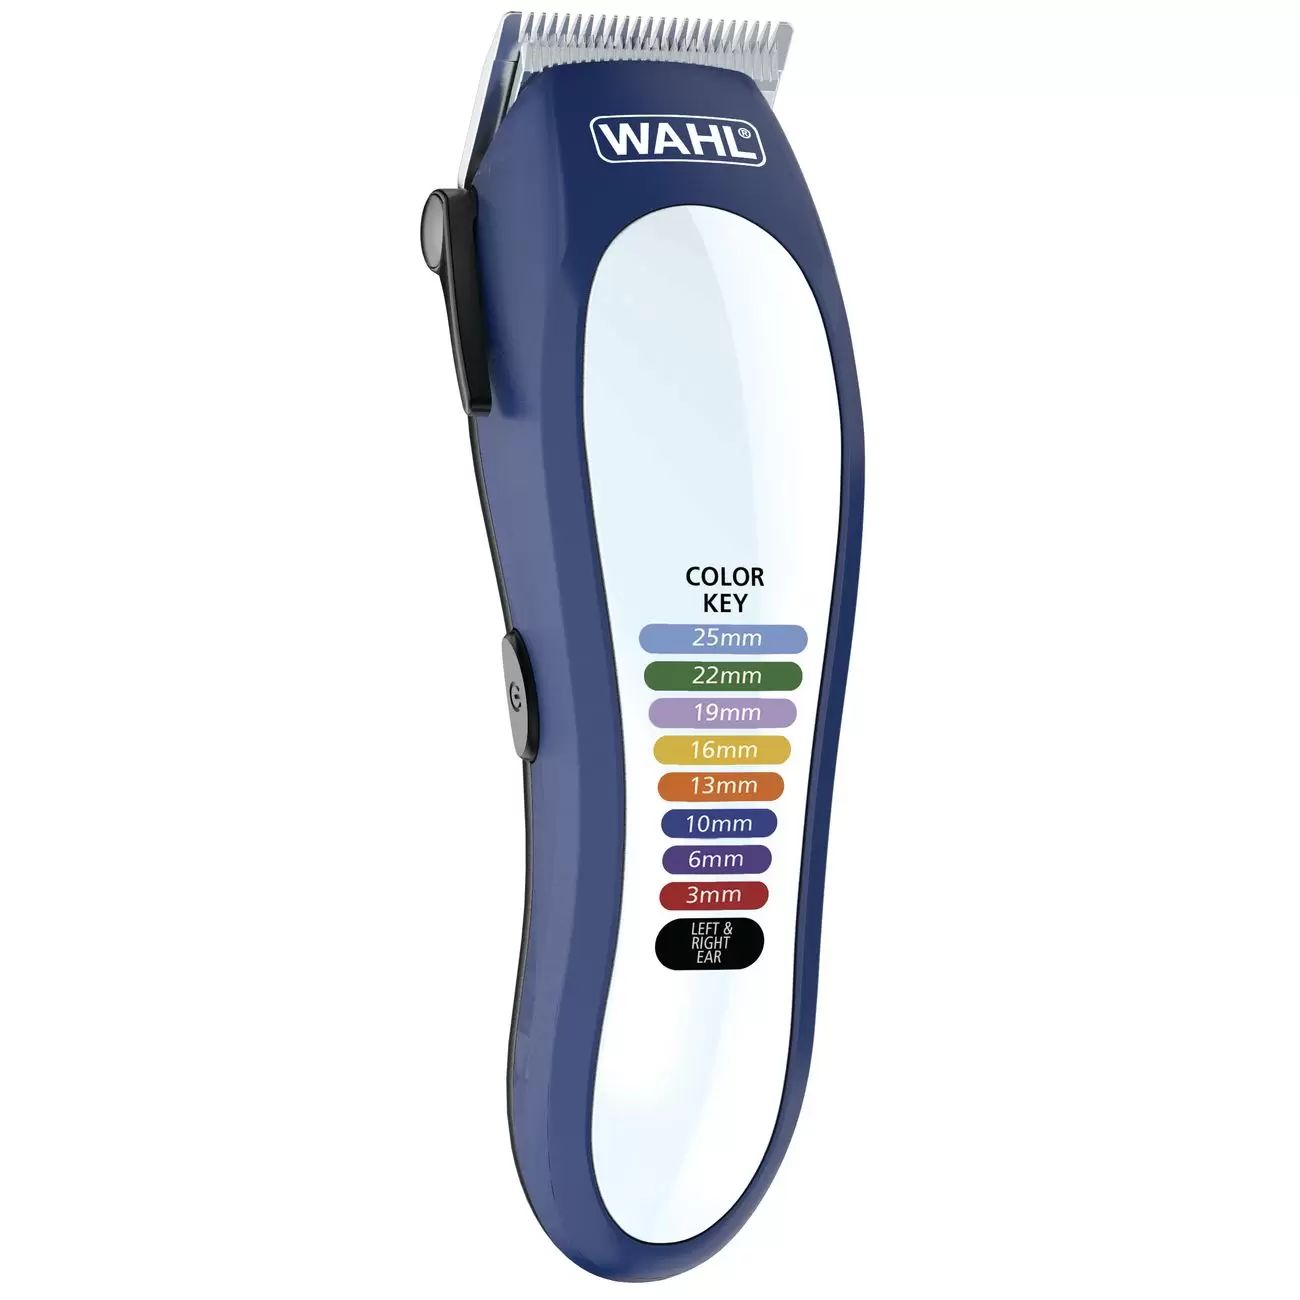 Машинка для стрижки волос Wahl Color Pro Lithium (79600-3716) белый, синий смазка водостойкая для водометных насадок totachi lithium ep2 390г 70704